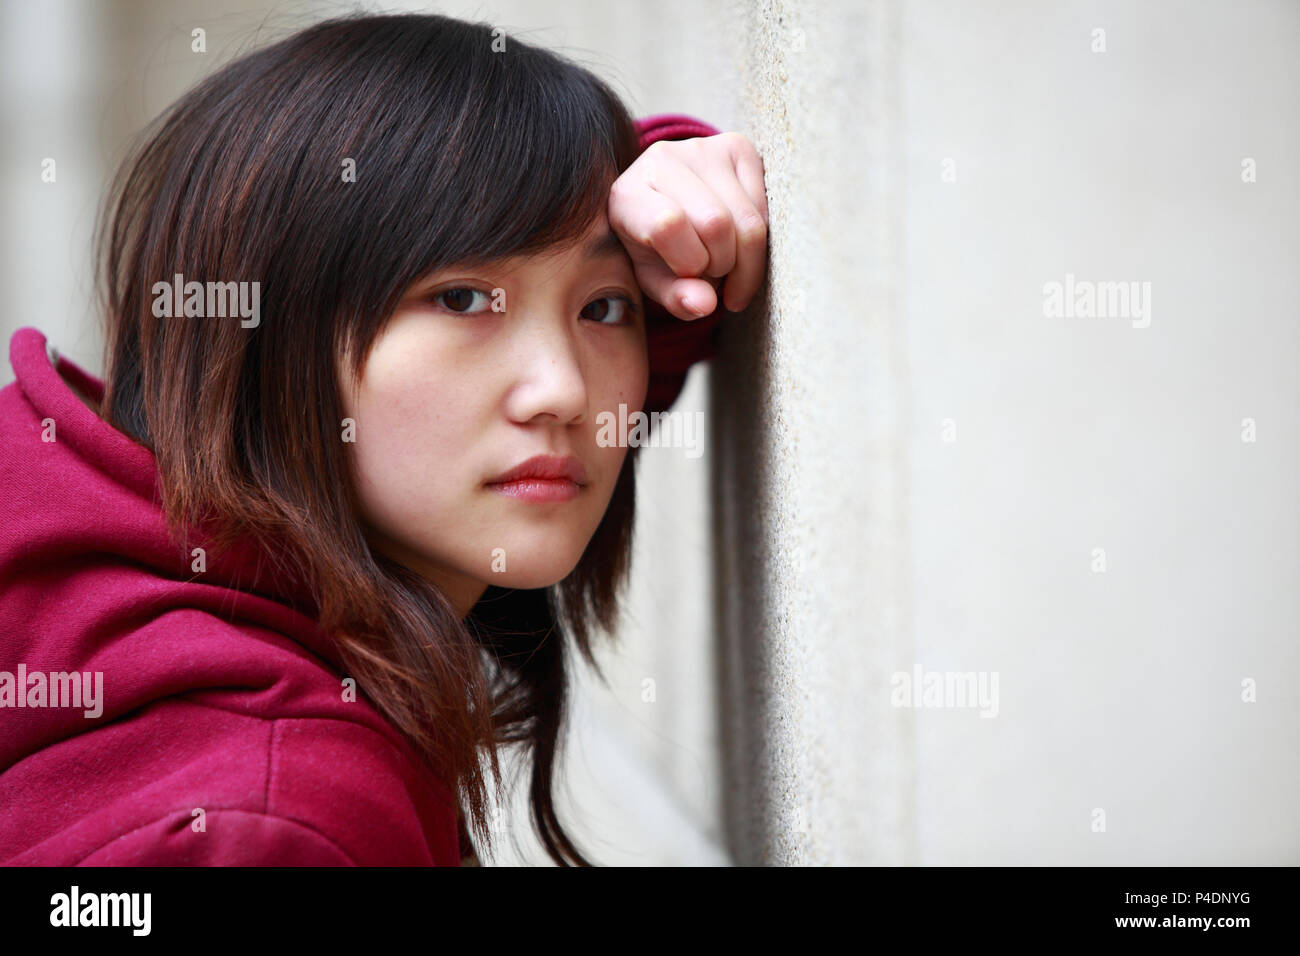 Ein junger Sad girl portrait Stockfoto